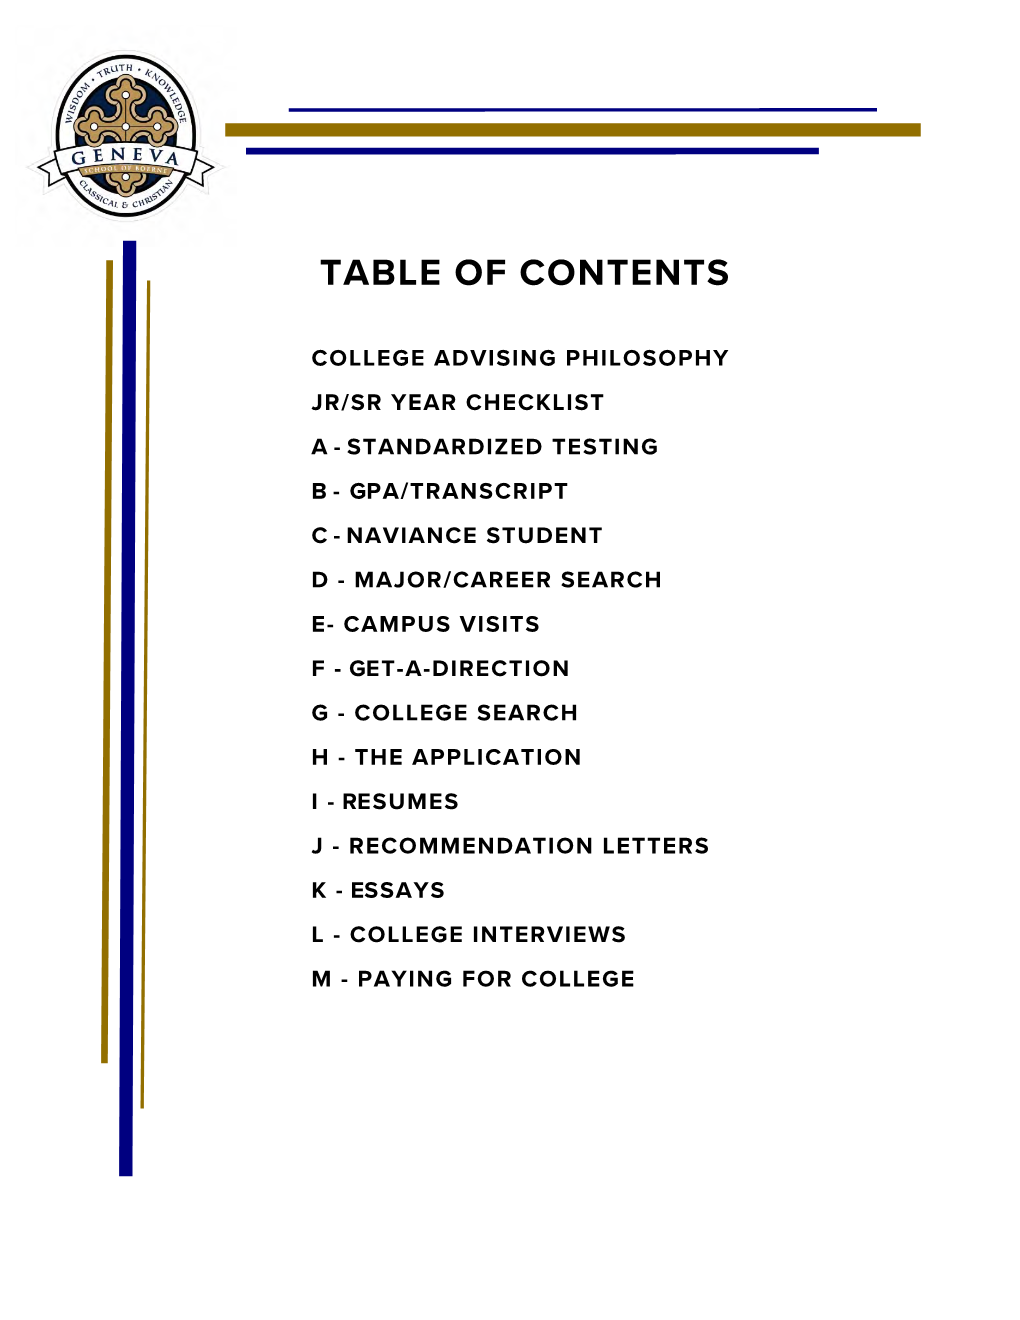 GSB College Handbook